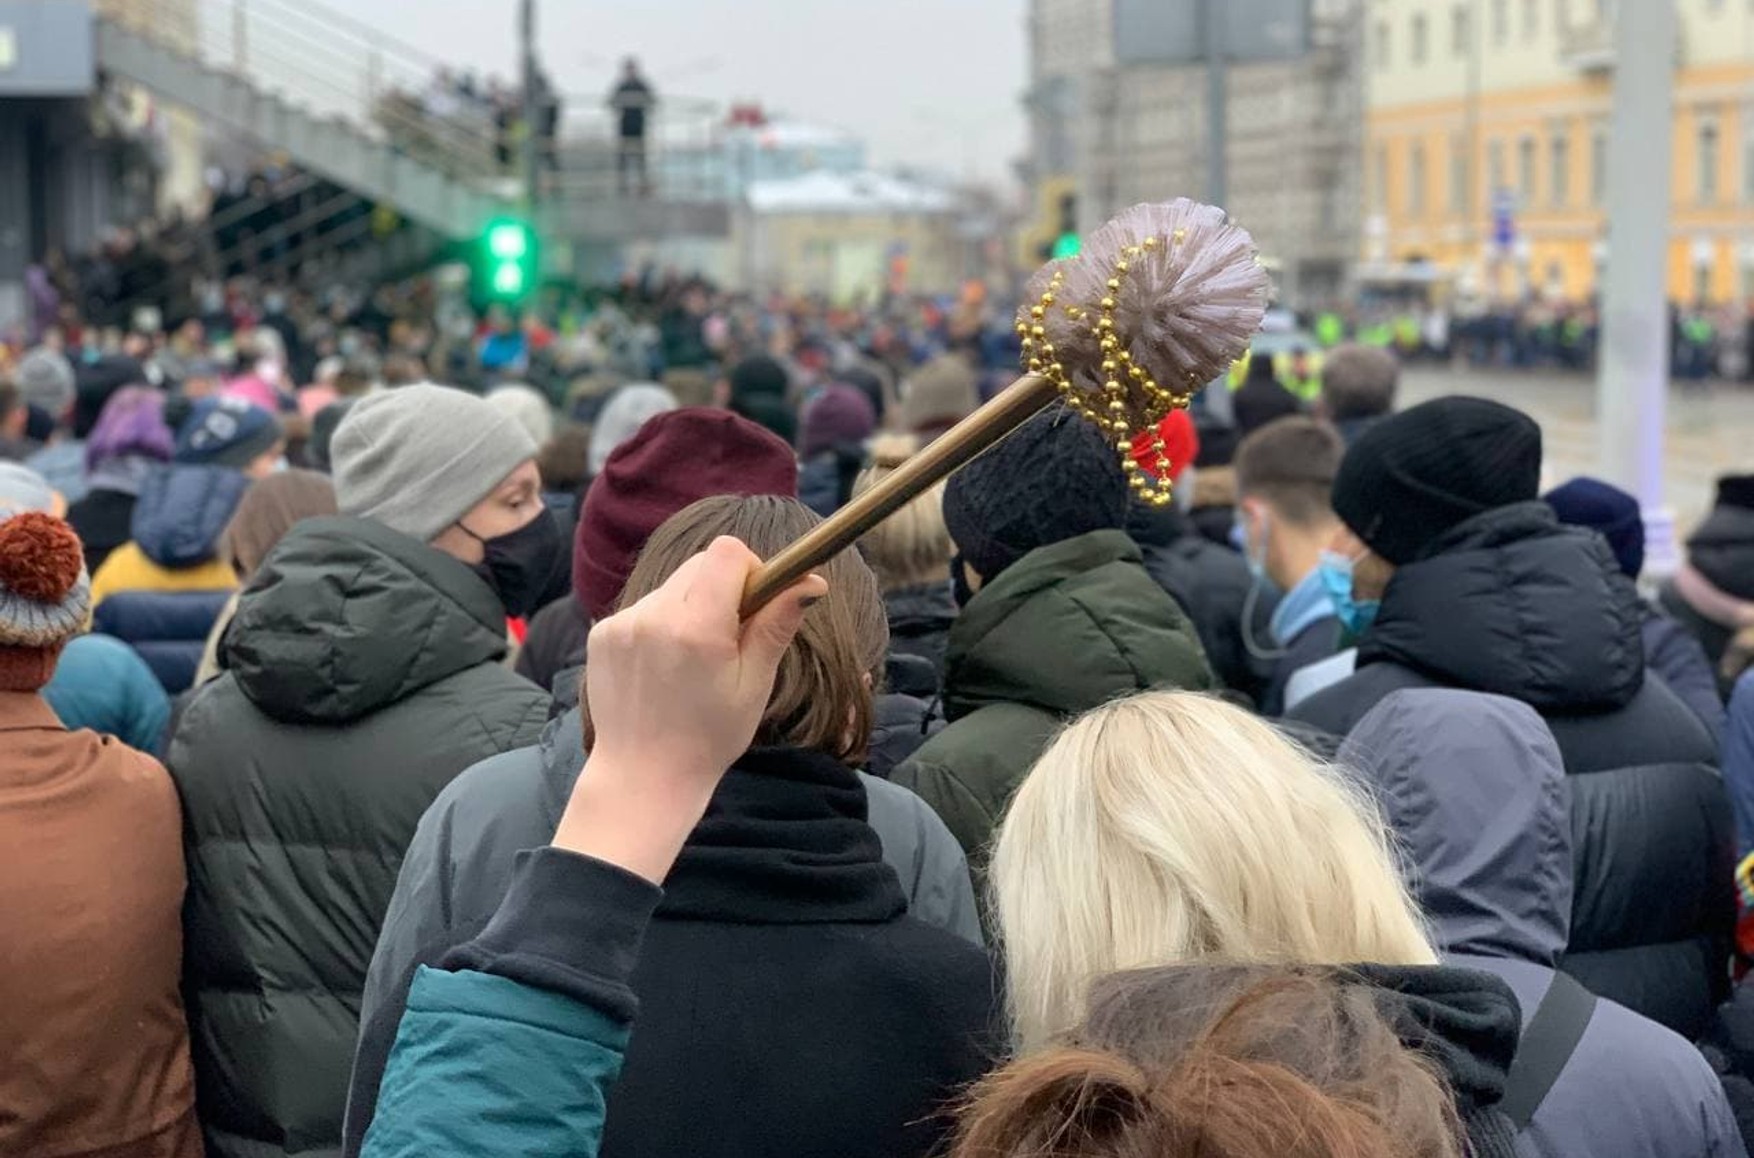 СК порушив низку кримінальних справ за підсумками протестів в Москві. Вони пов'язані із застосуванням насильства, знищенням майна та хуліганством